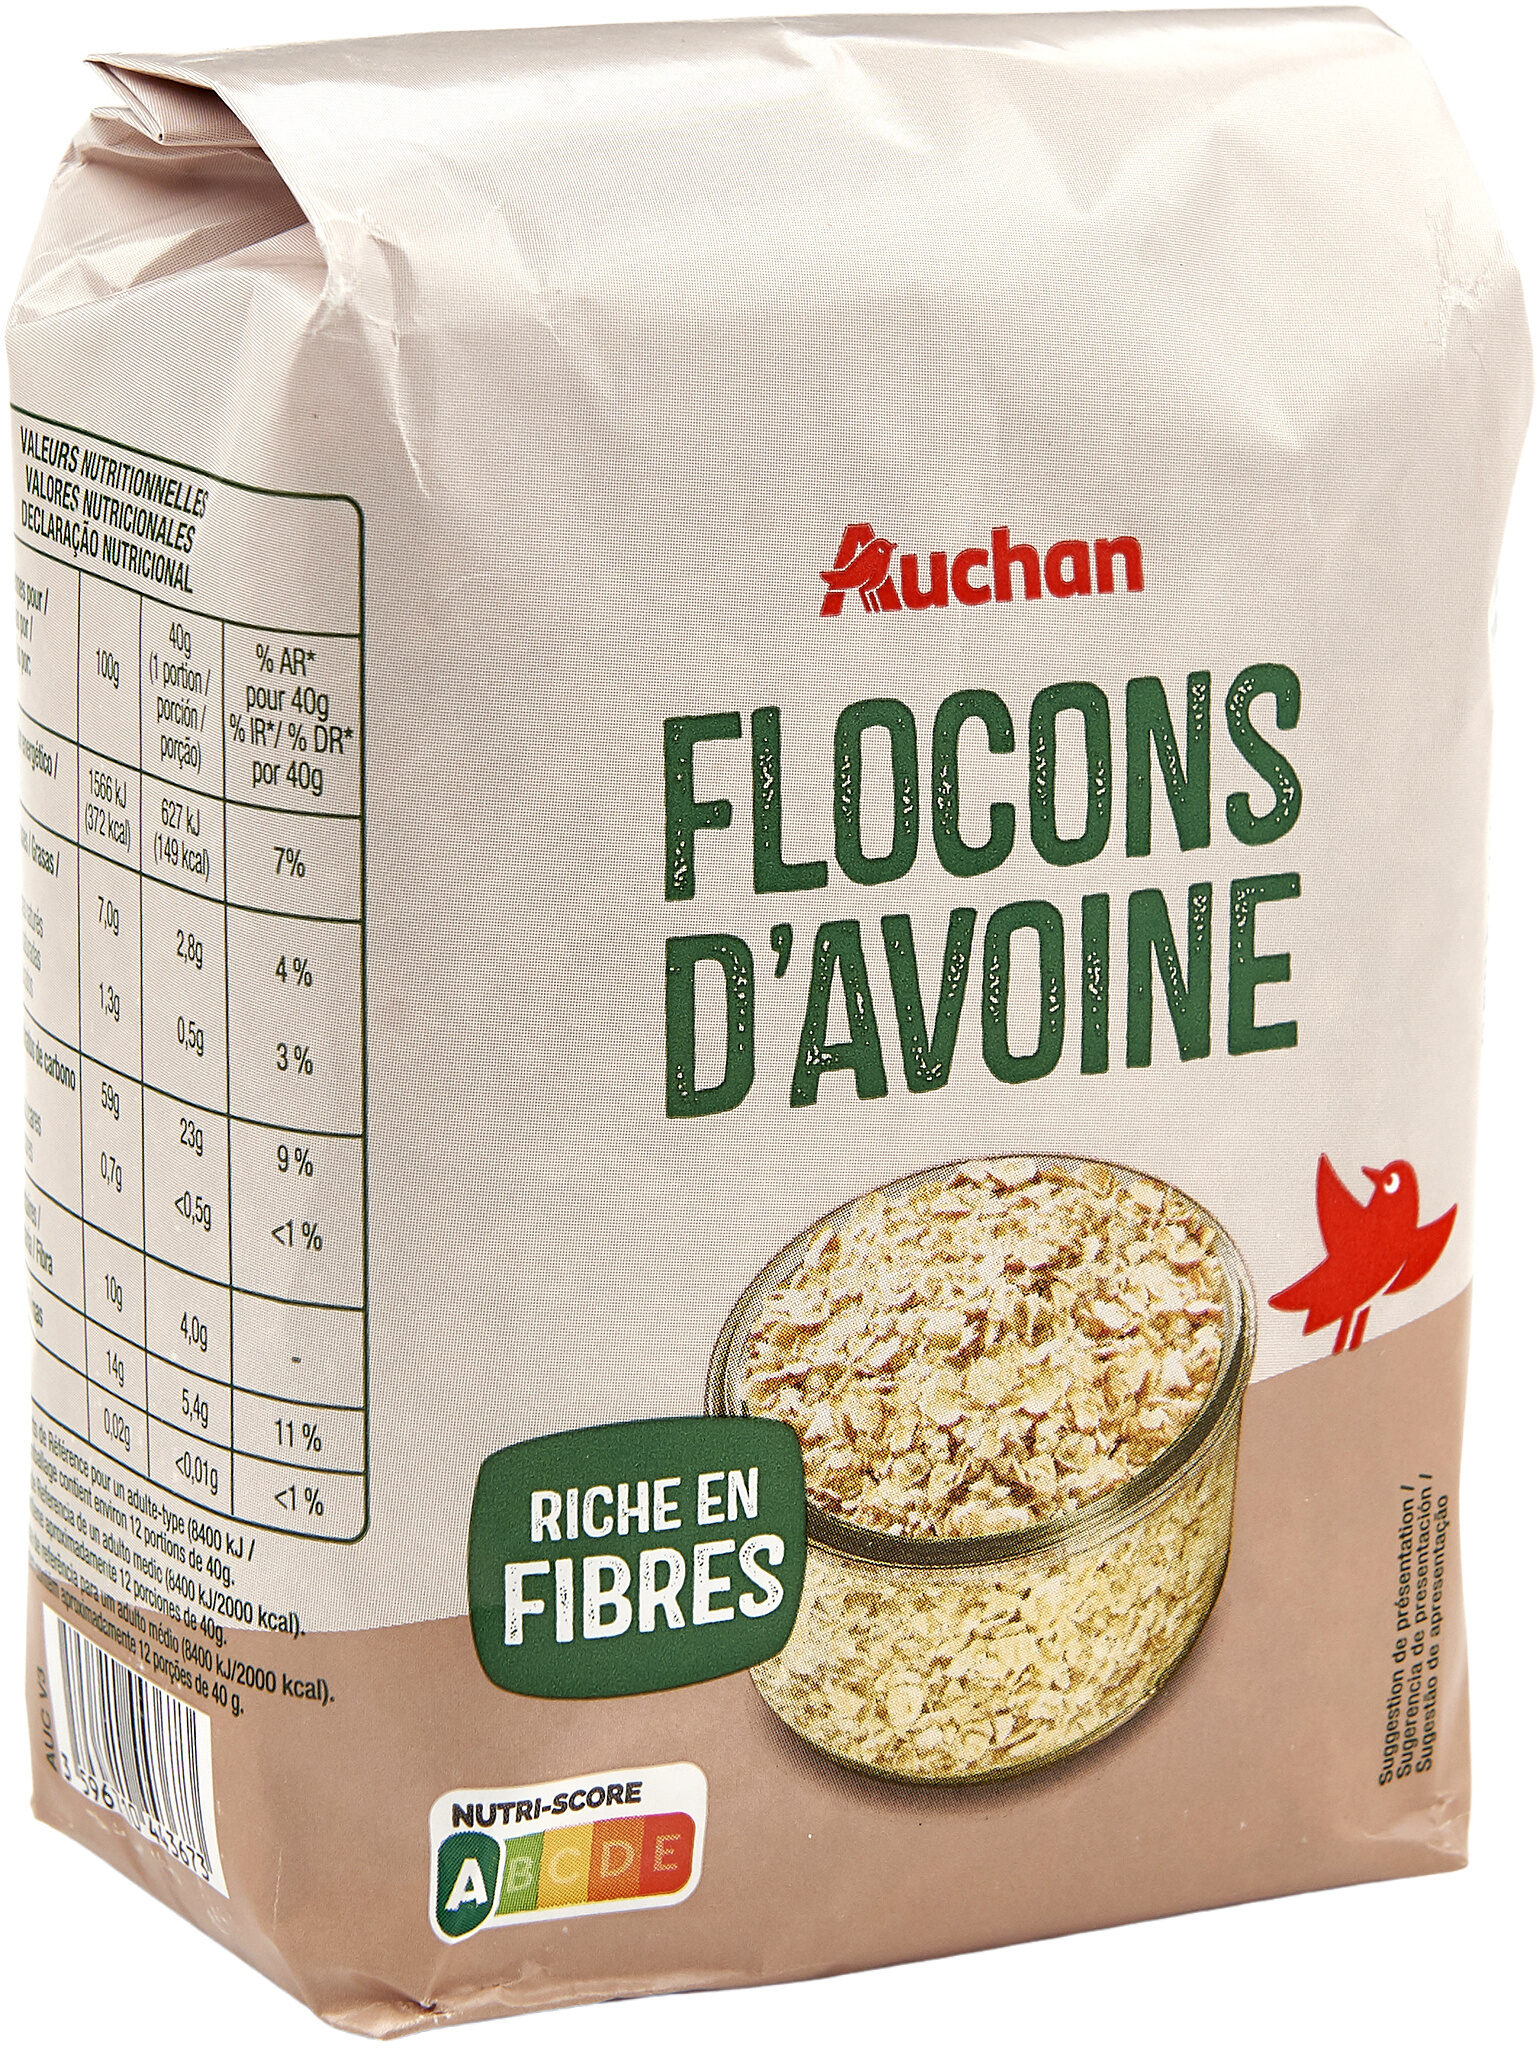 Flocons d'avoine - Auchan - 0.5 kg